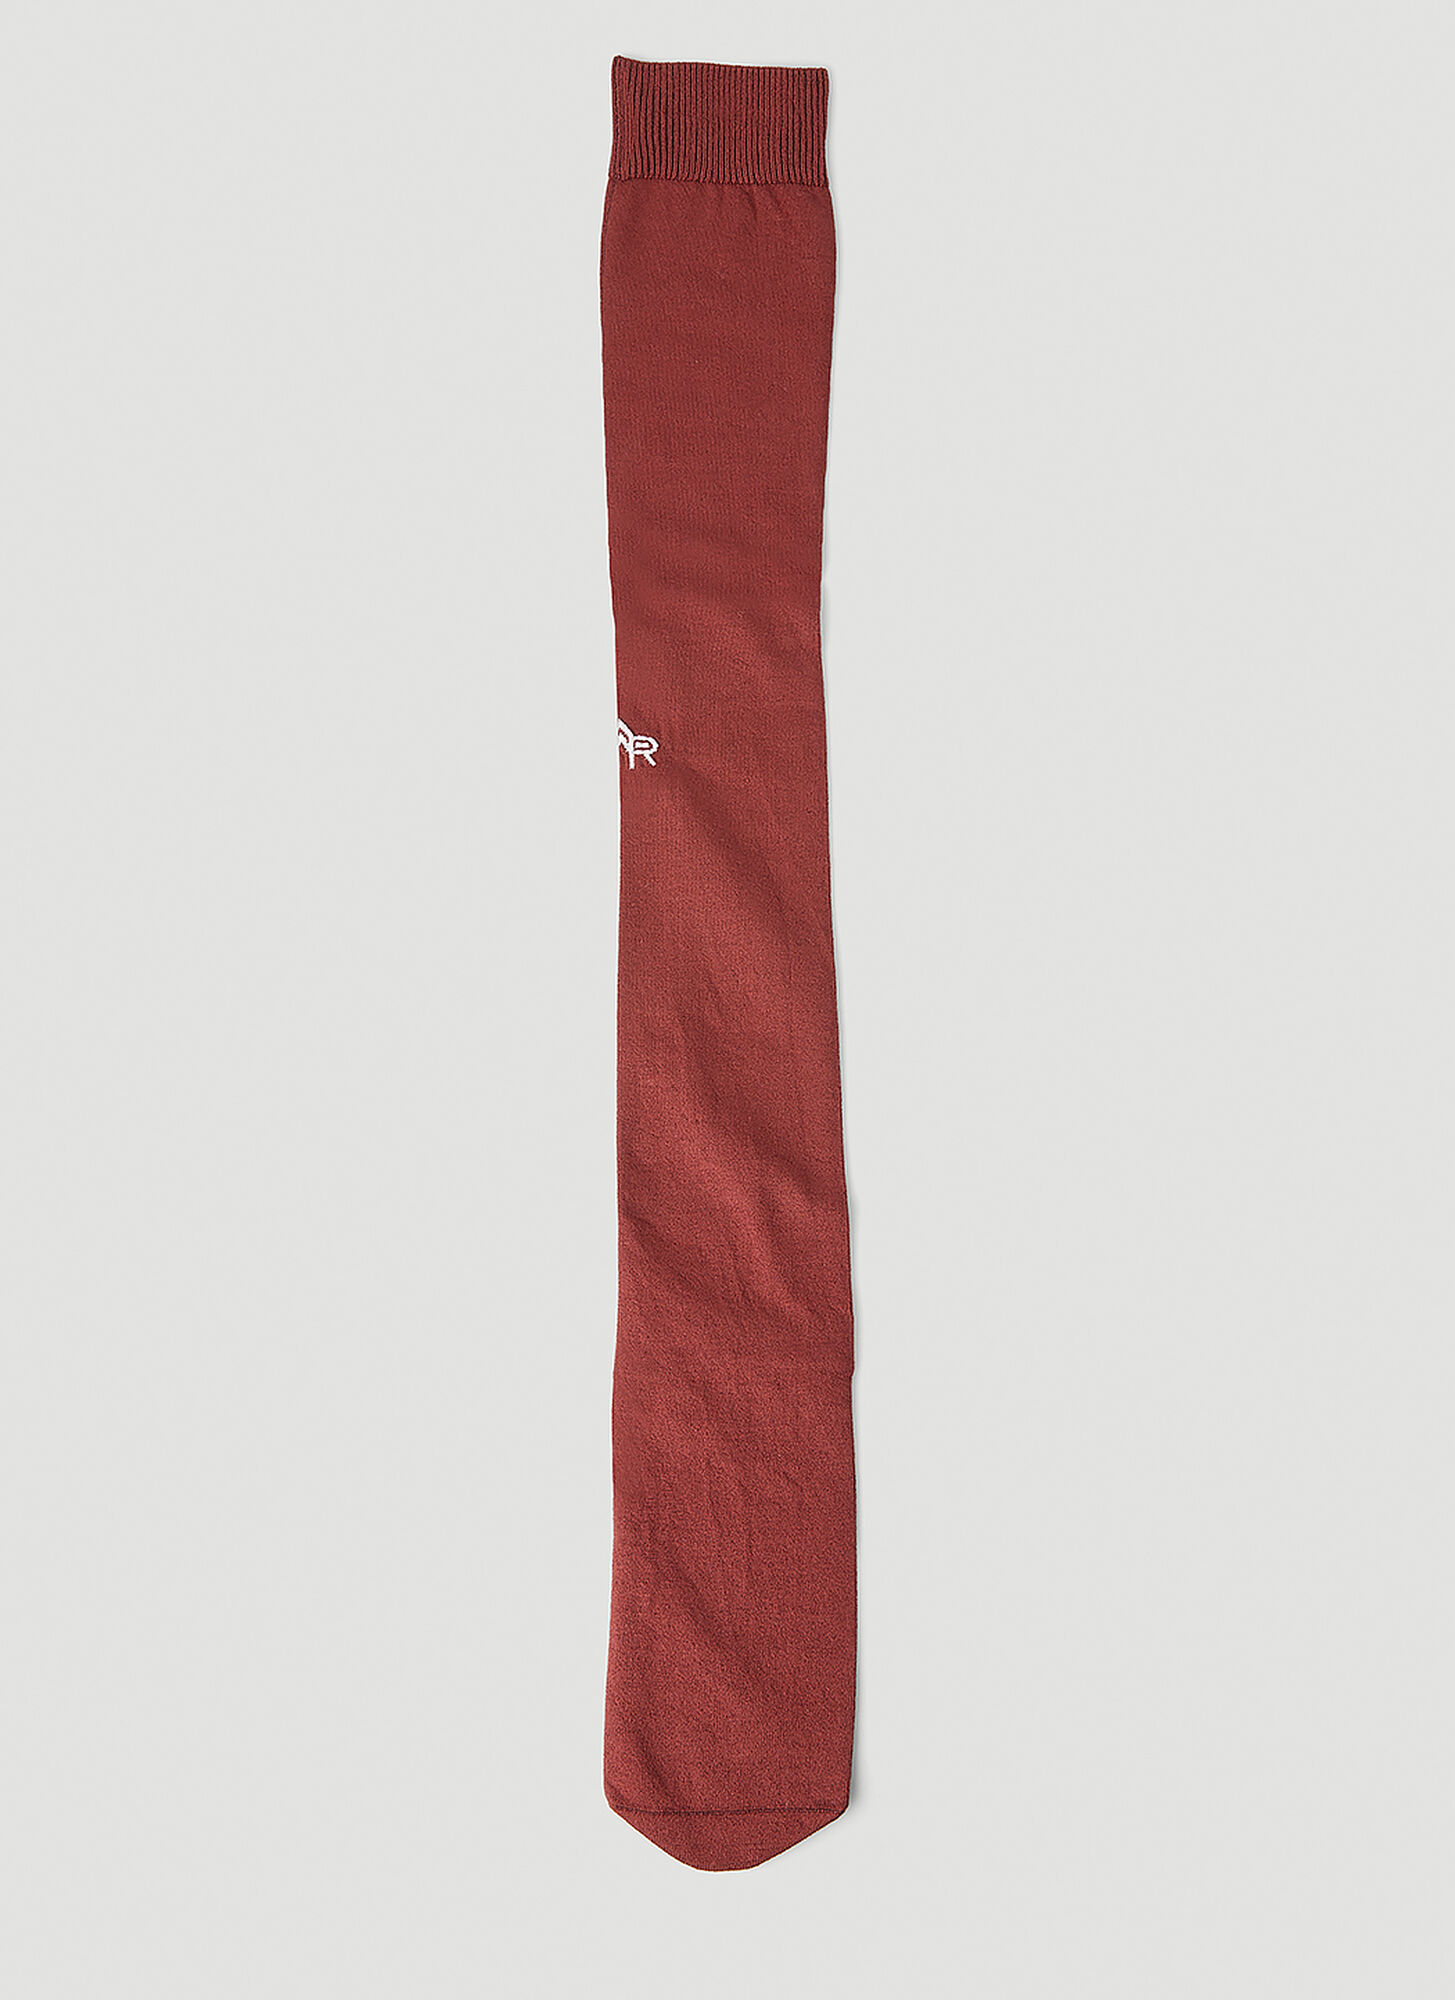 Meryll Rogge Logo Embroidered Long Socks Female Brown